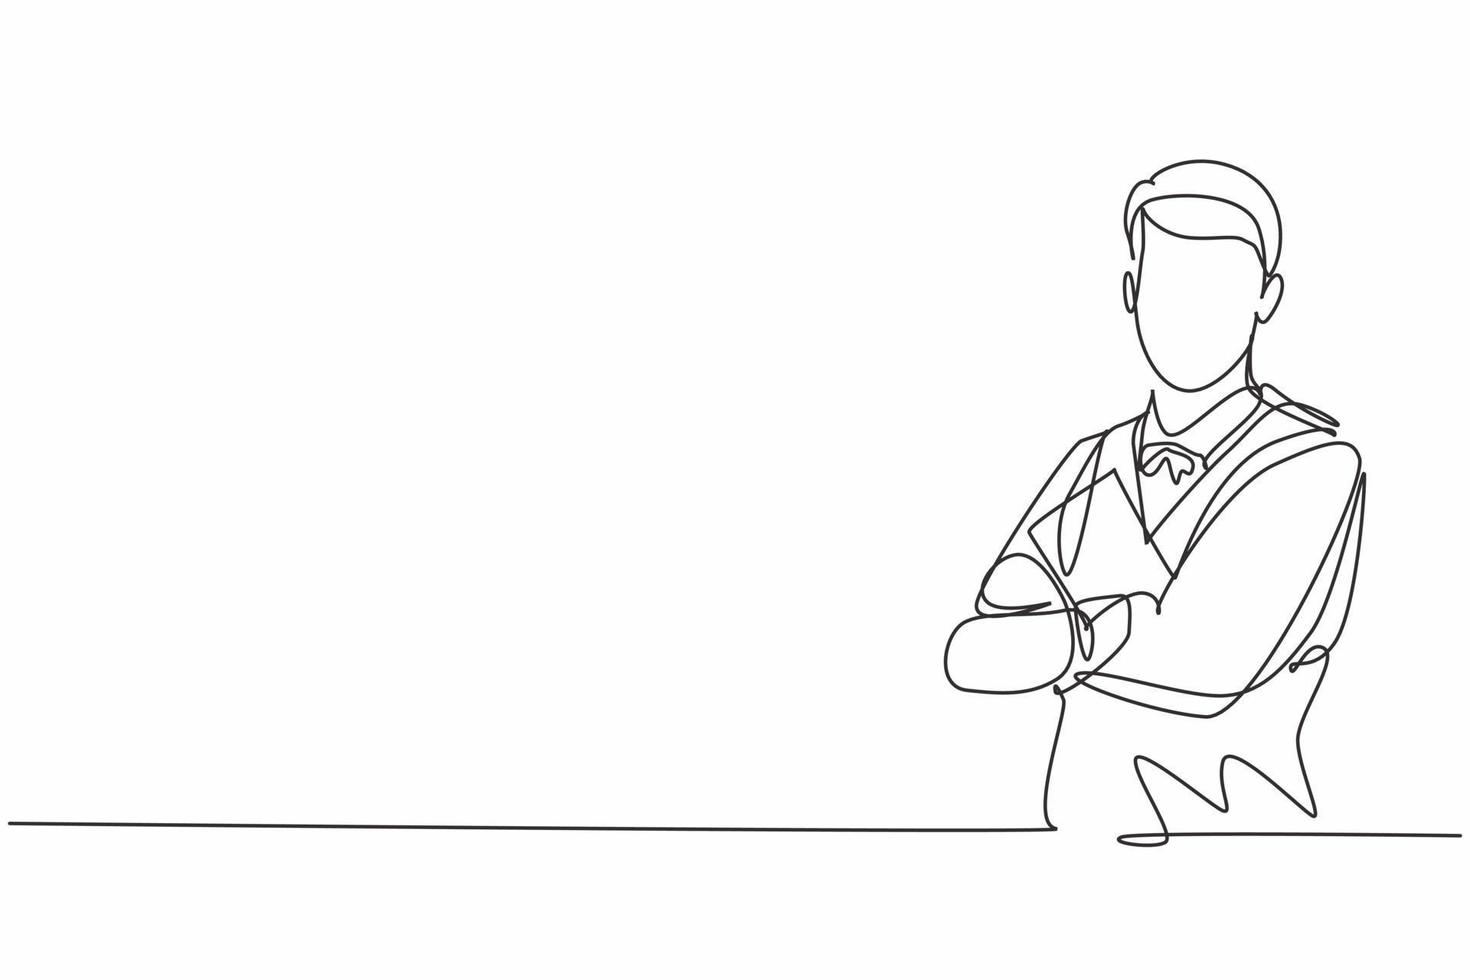 enkele doorlopende lijntekening van een jonge mannelijke ober met een kruisarm op de borst terwijl hij het resto-menu vasthoudt. professioneel werk baan beroep. minimalisme concept een lijn tekenen grafisch ontwerp vectorillustratie vector